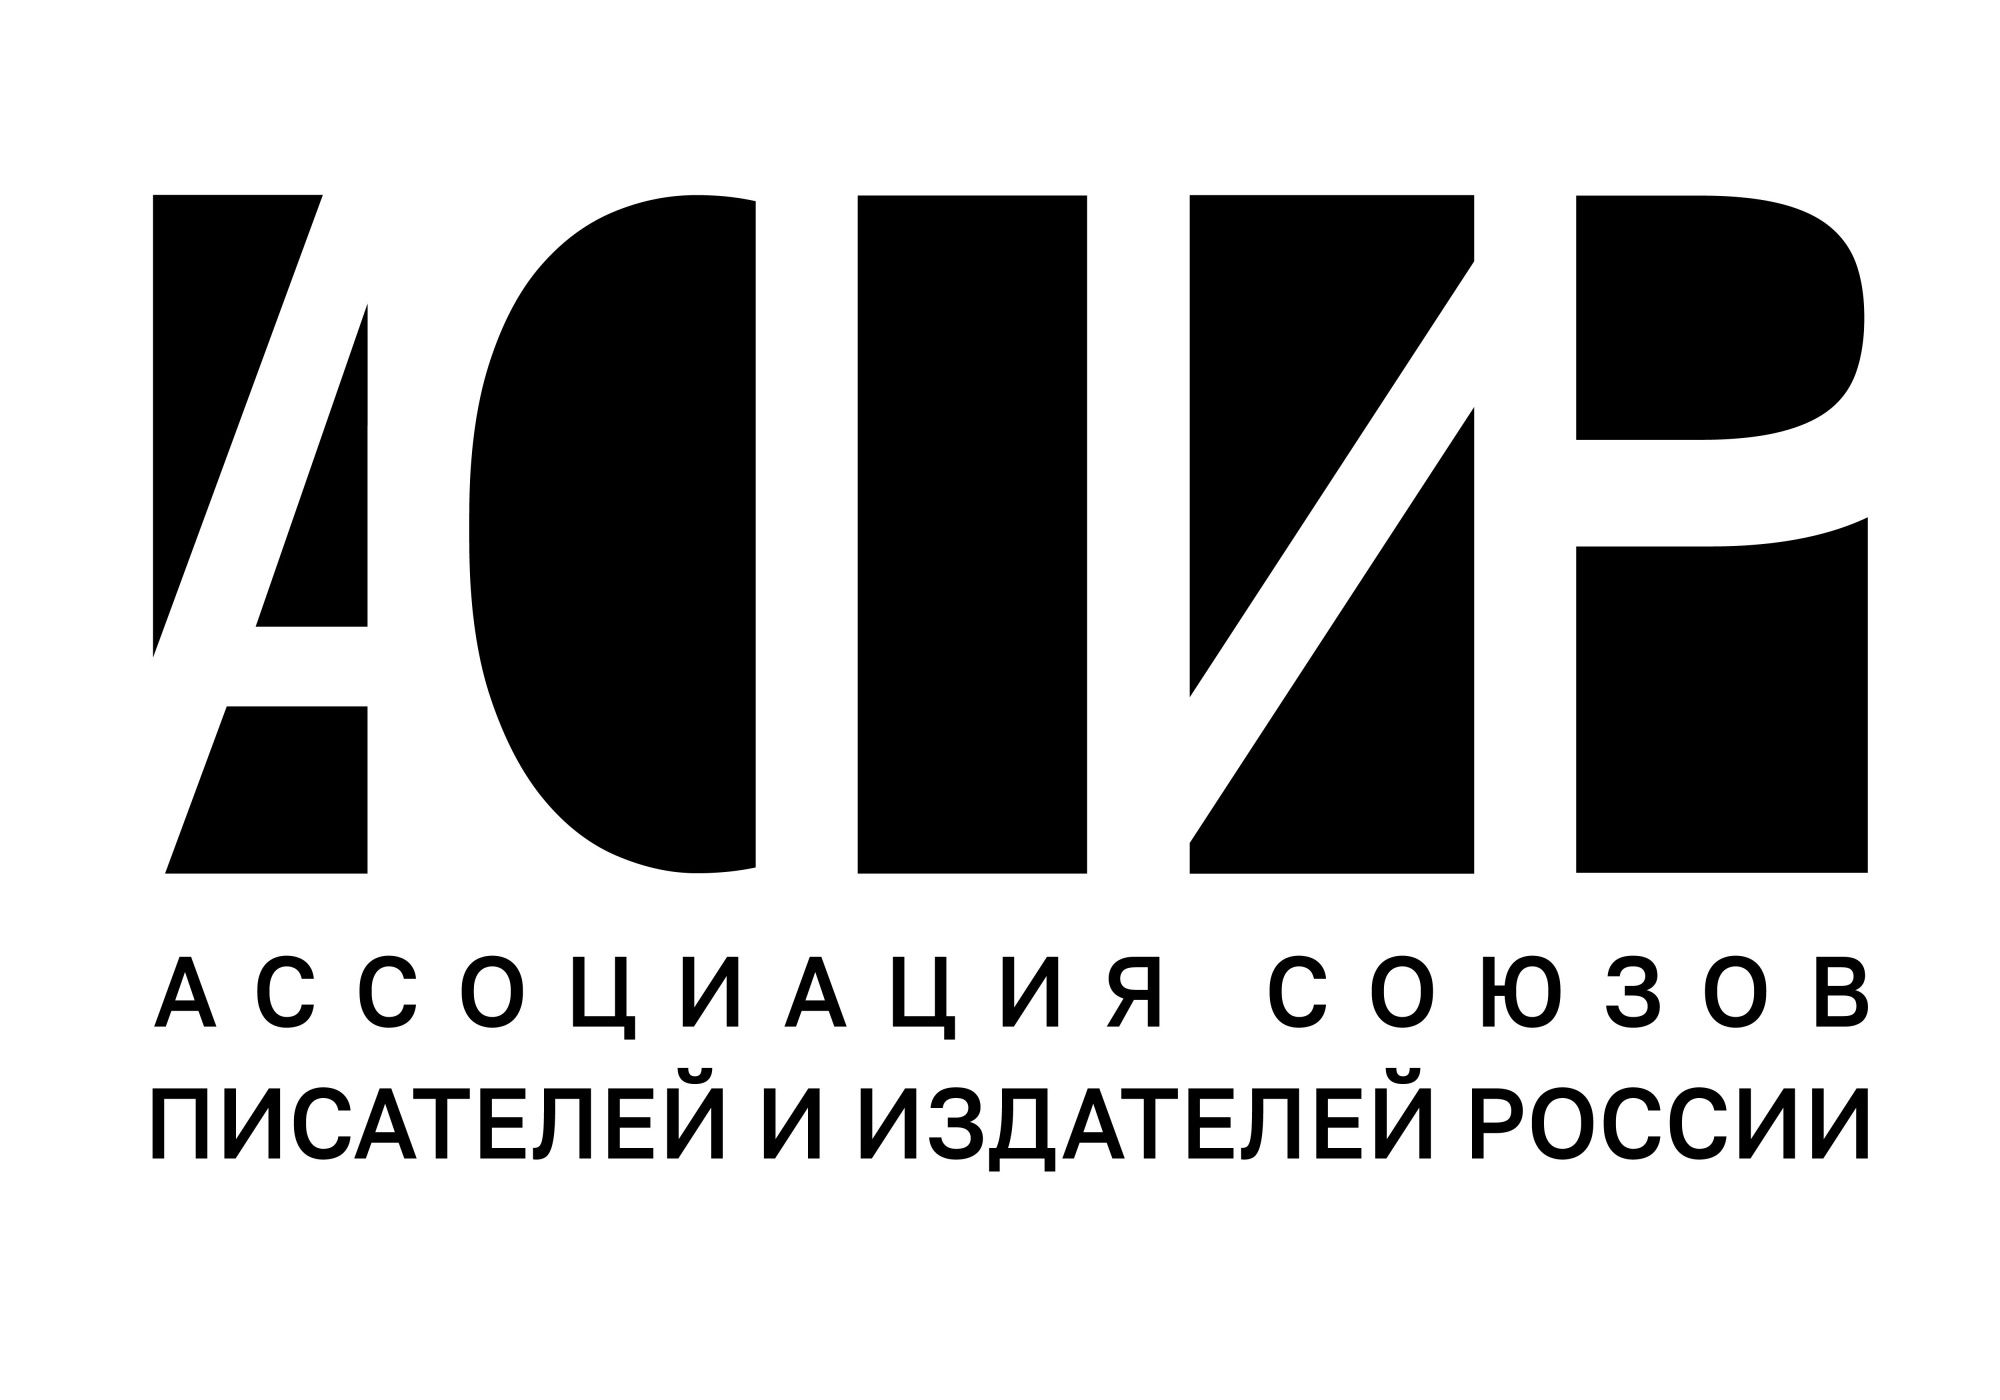 Ассоциация союзов писателей и издателей России (АСПИР)